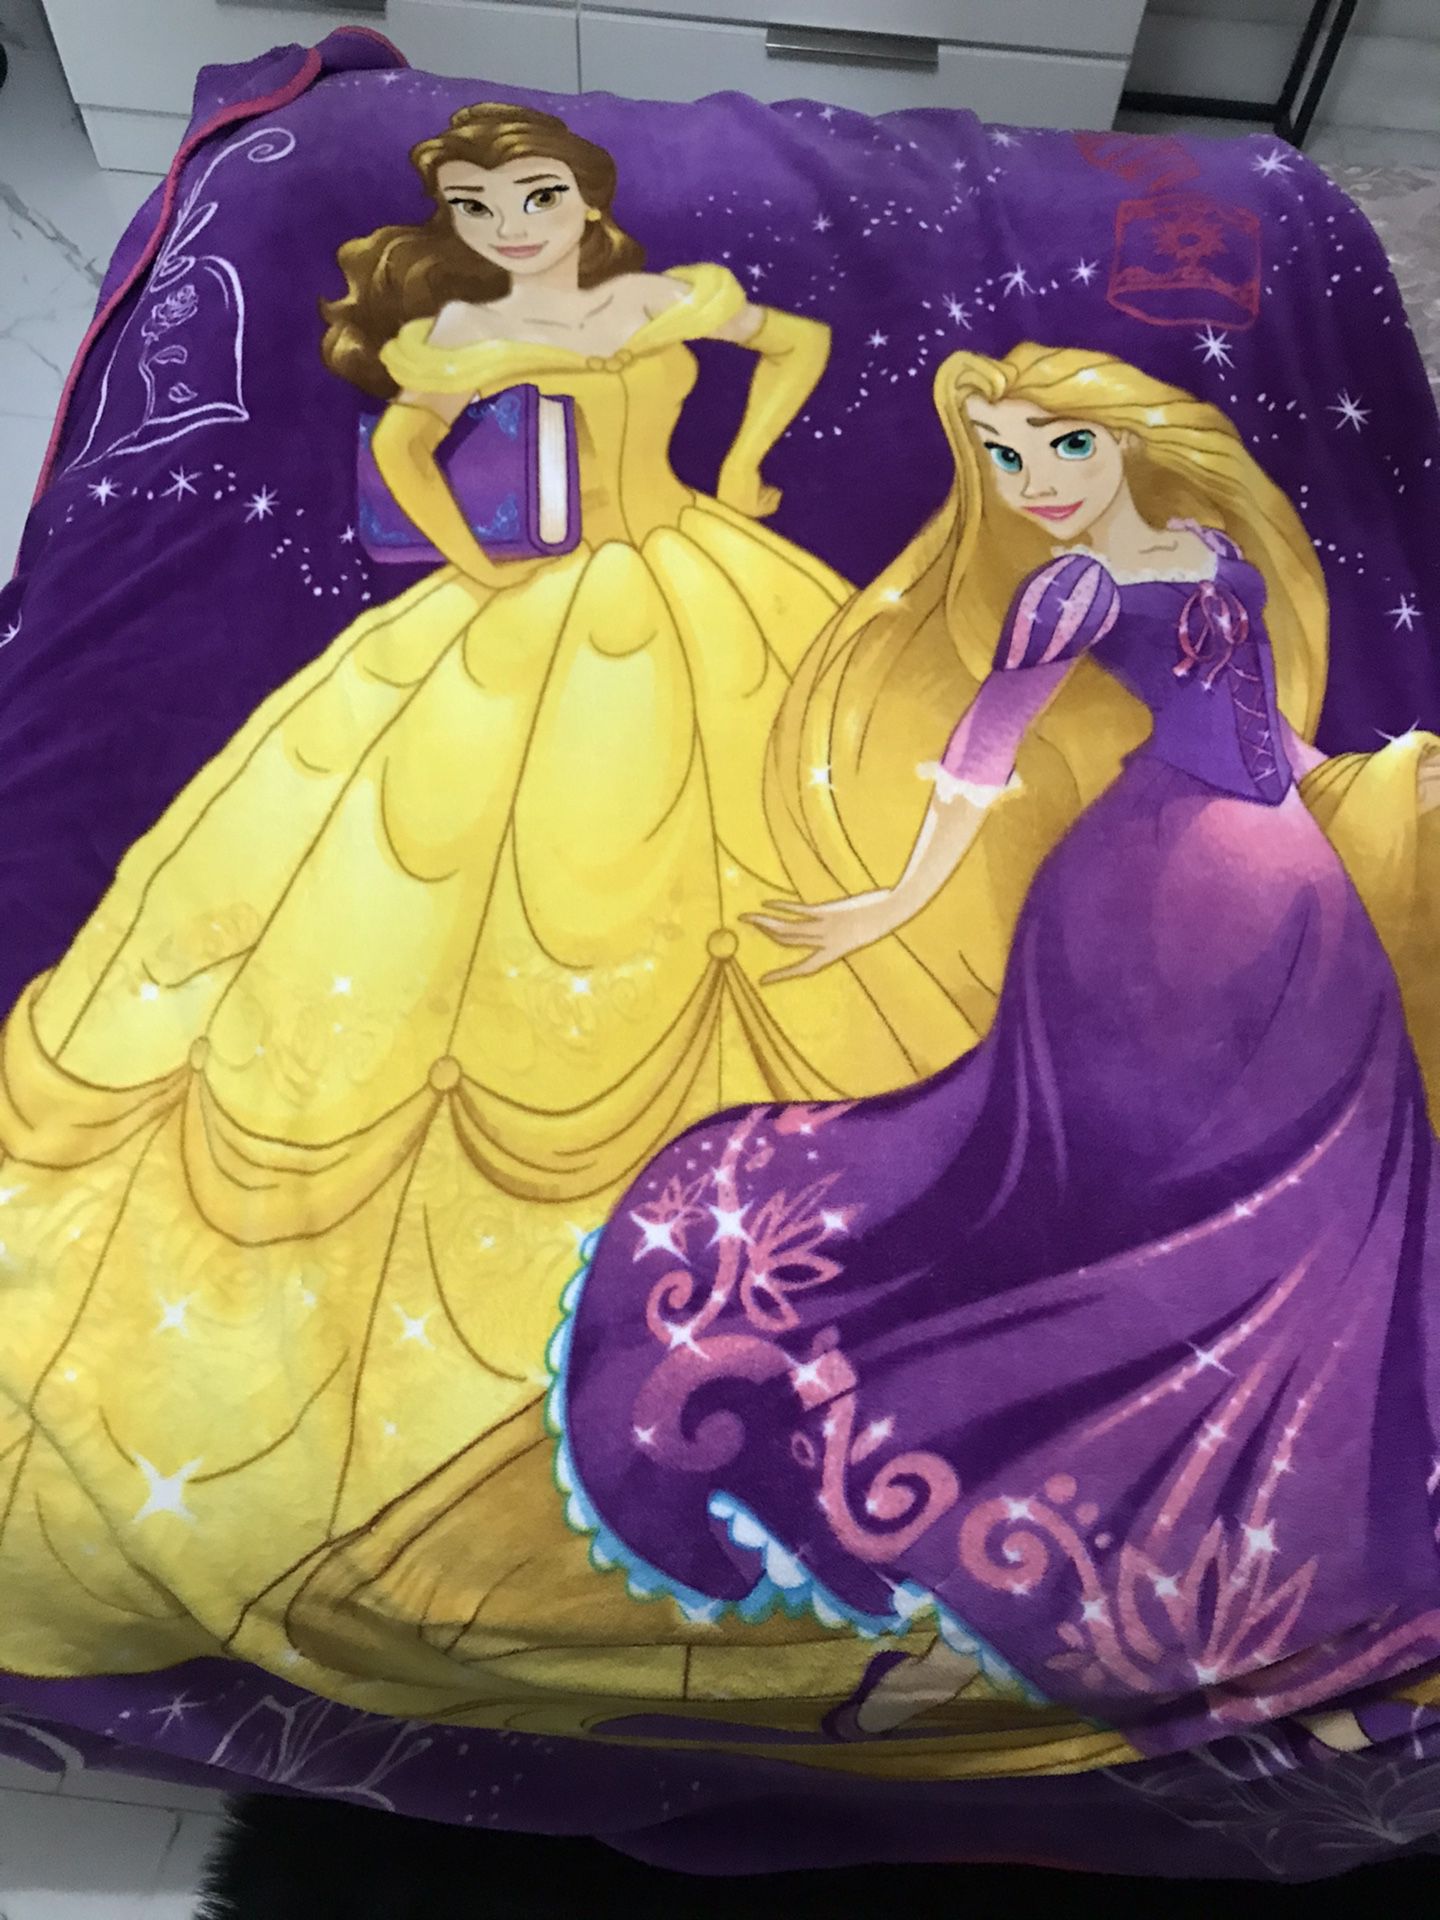 Princesses blanket belle and rapunzel